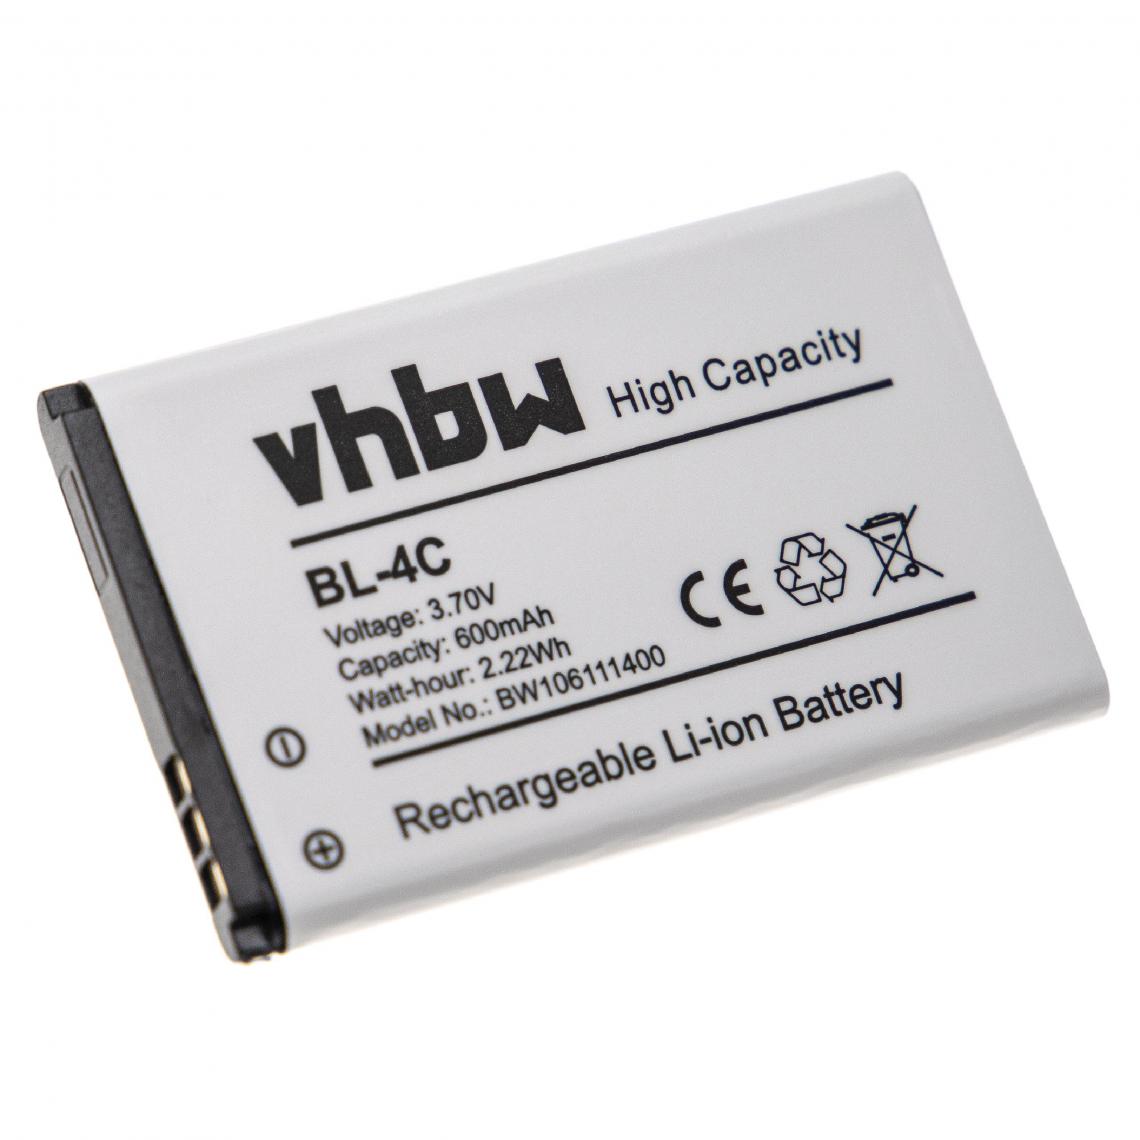 Vhbw - vhbw Batterie de remplacement pour téléphone mobile smartphone compatible avec Bea-fon C140/C240 (600mAh, 3.7V, Li-Ion) - Batterie téléphone